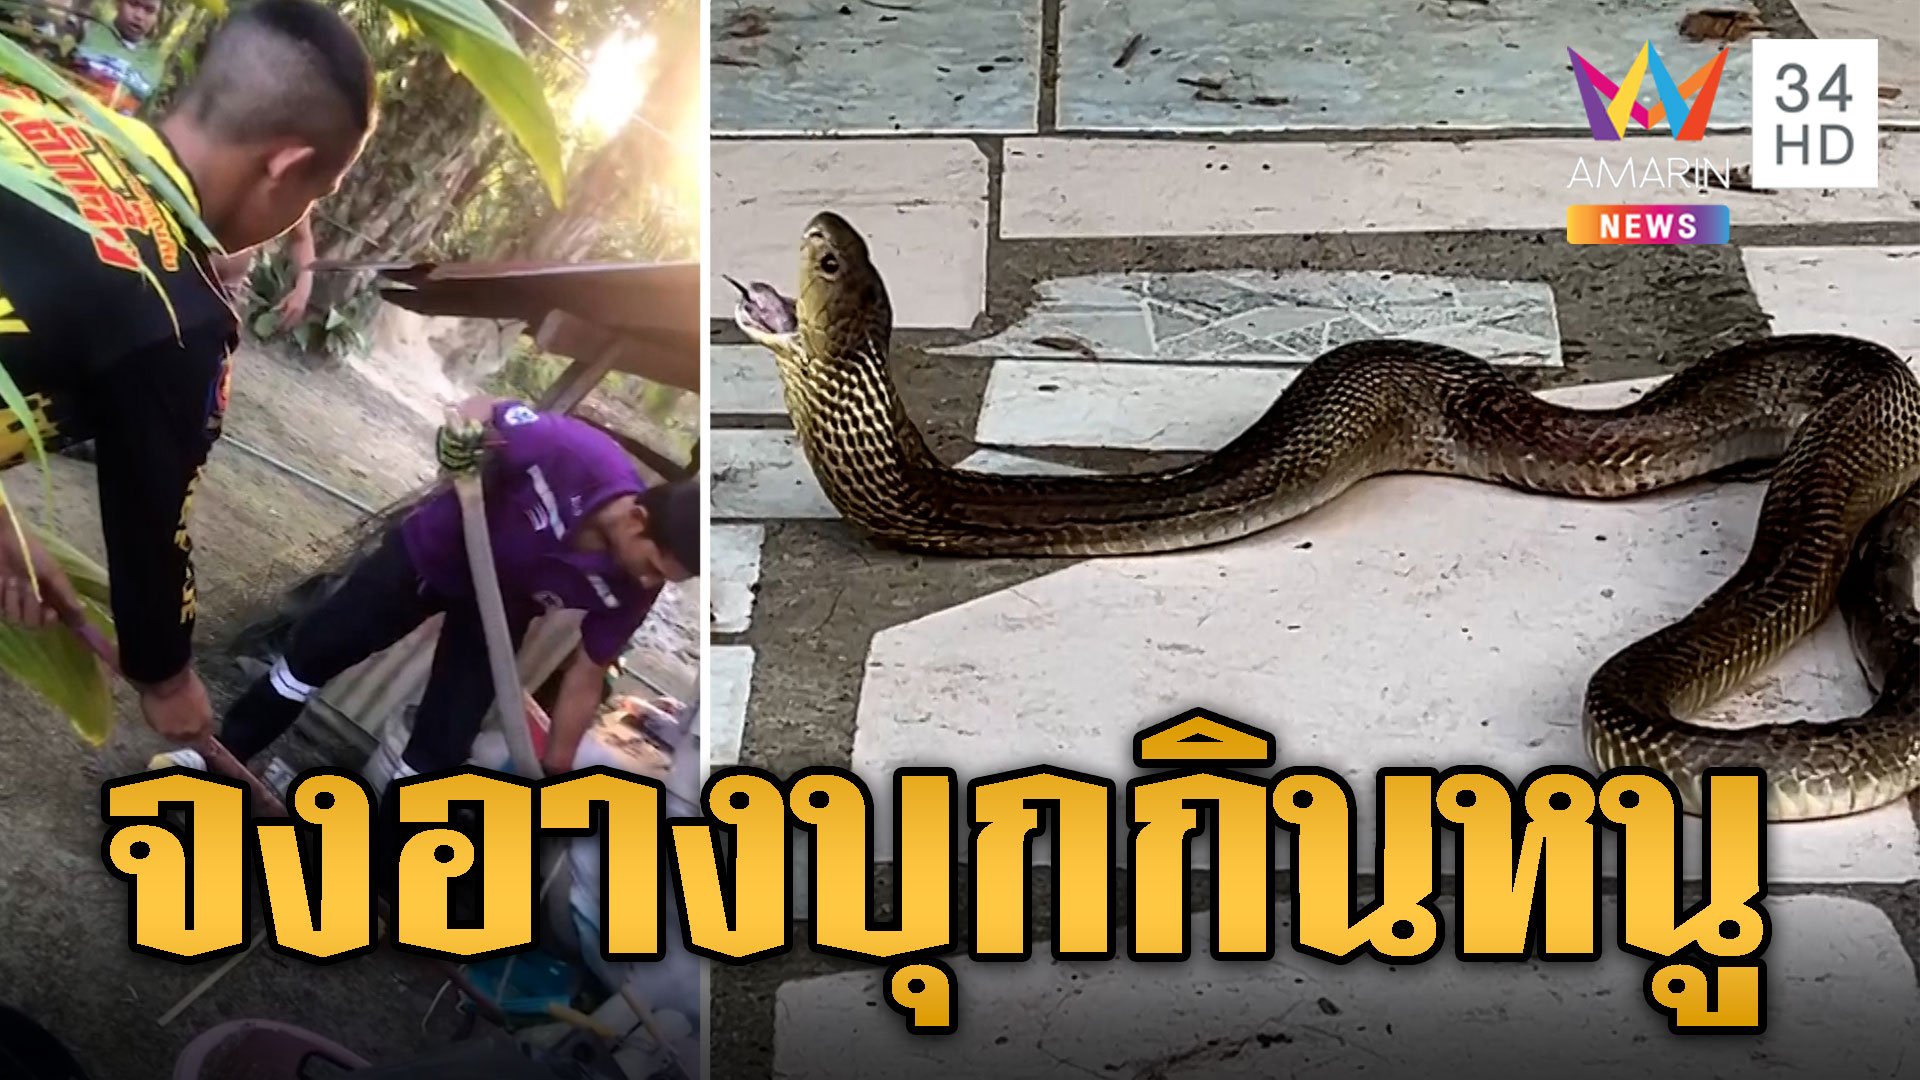 สุดสะพรึง! งูจงอาง 3 เมตร บุกกินหนูในบ้าน | ข่าวอรุณอมรินทร์ | 8 ก.พ. 67 | AMARIN TVHD34